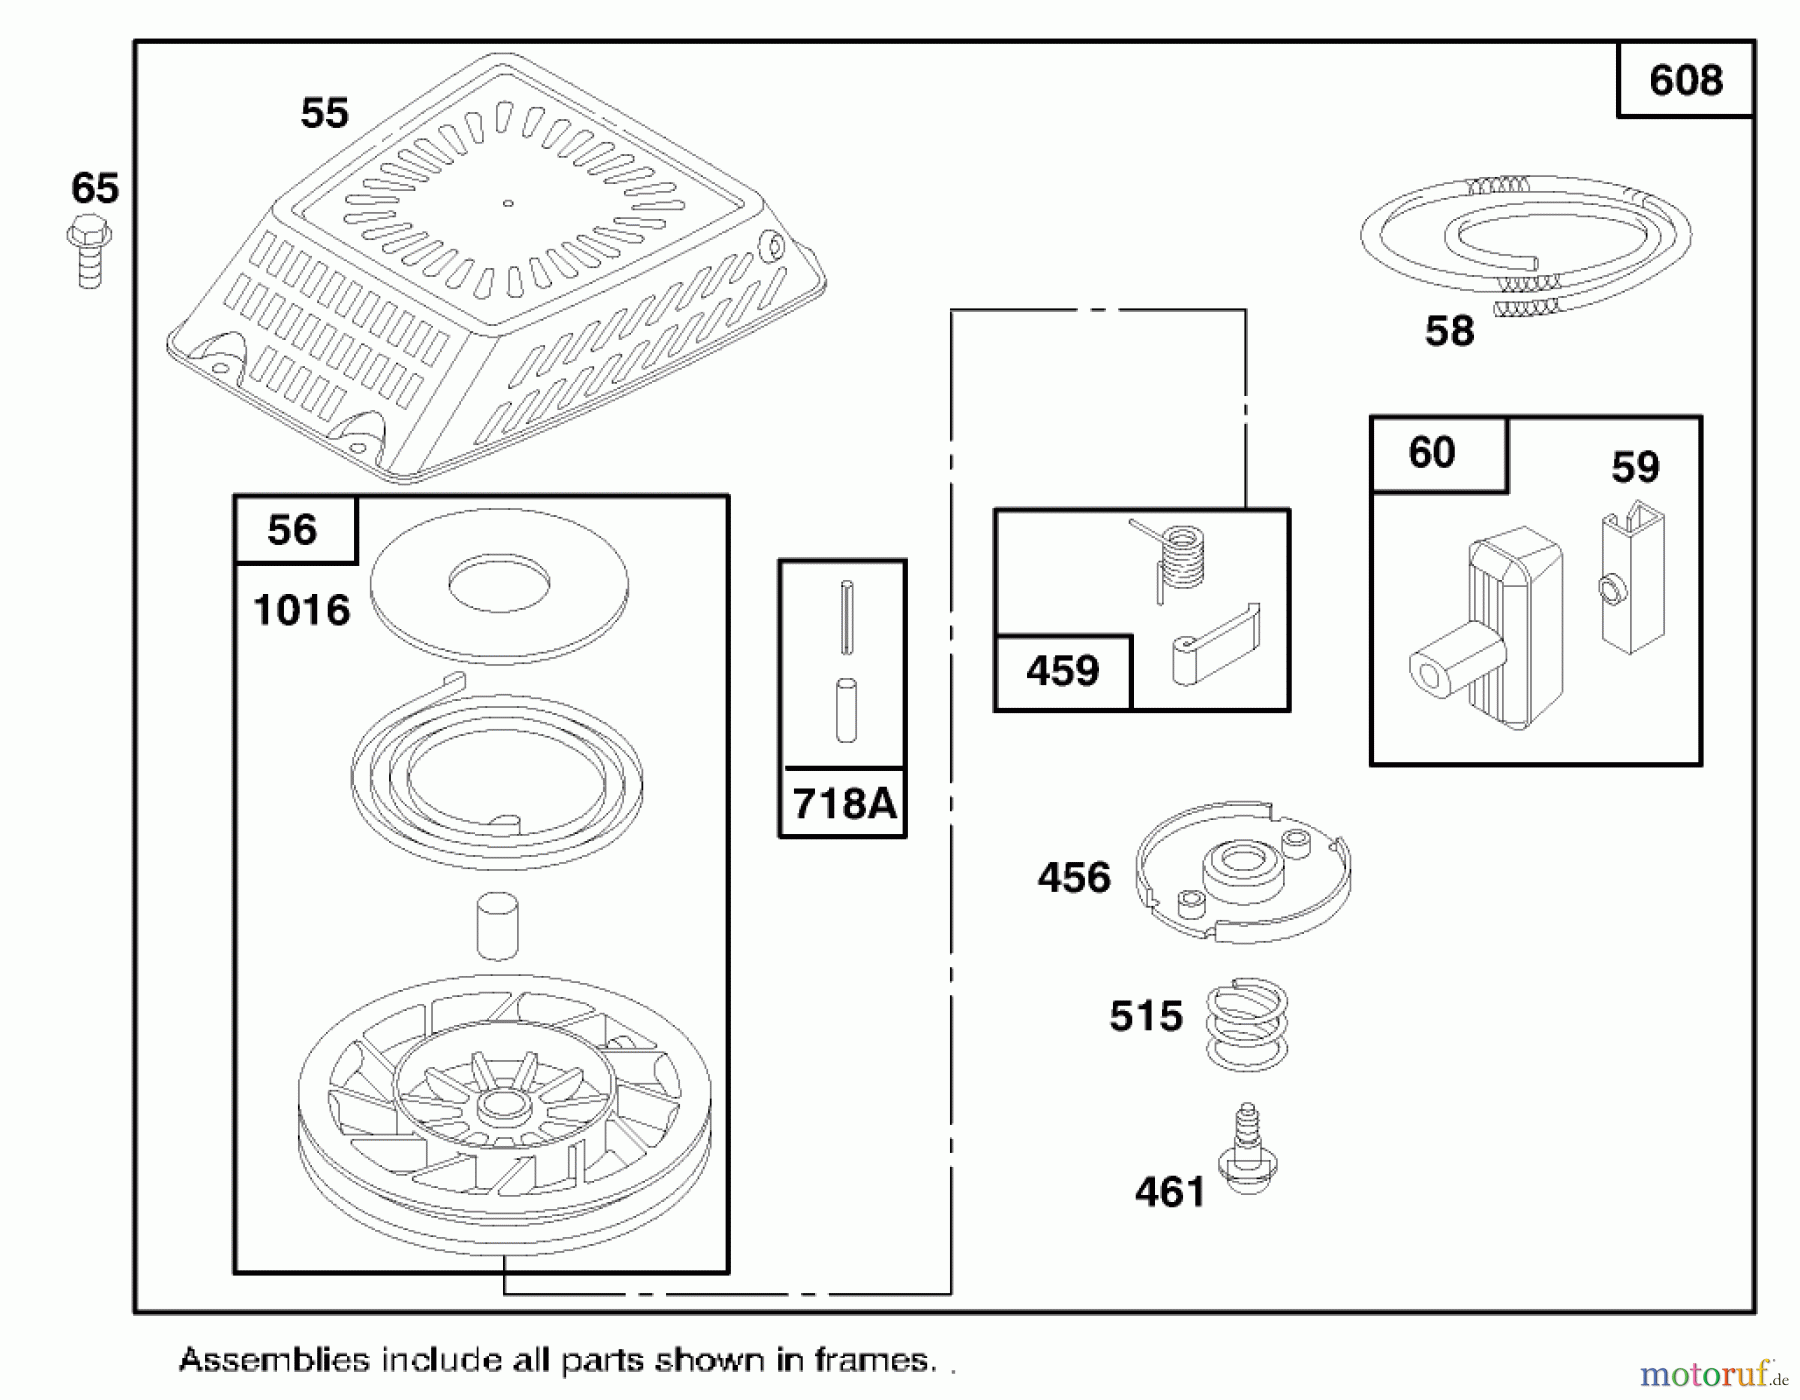  Toro Neu Mowers, Walk-Behind Seite 1 20474 - Toro Super Recycler Lawnmower, 1996 (6900001-6999999) ENGINE GTS 150 #5